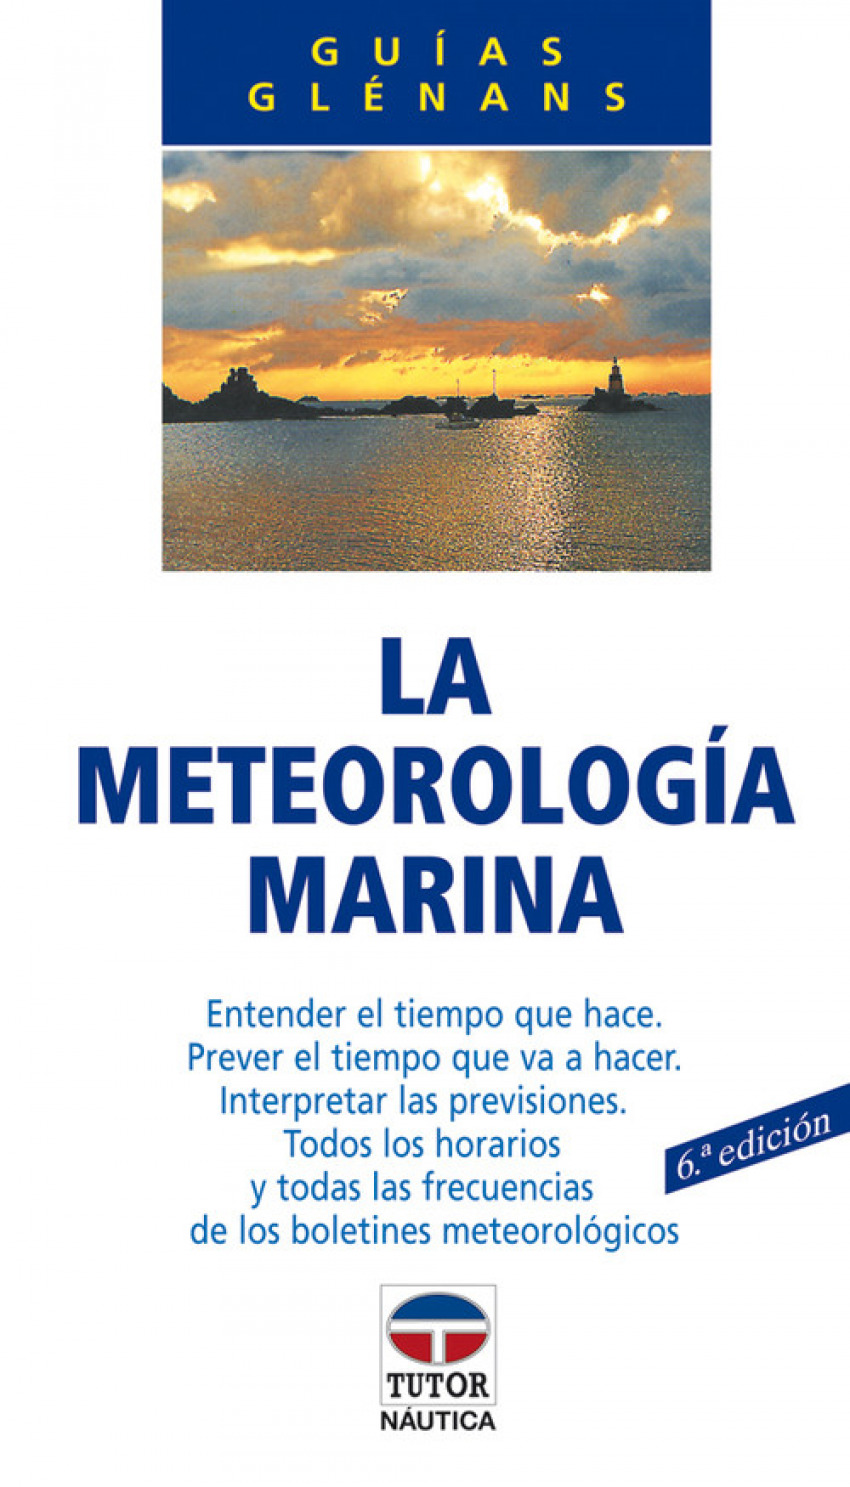 La meteorologia marina - Escuela de Navegación de Glénans